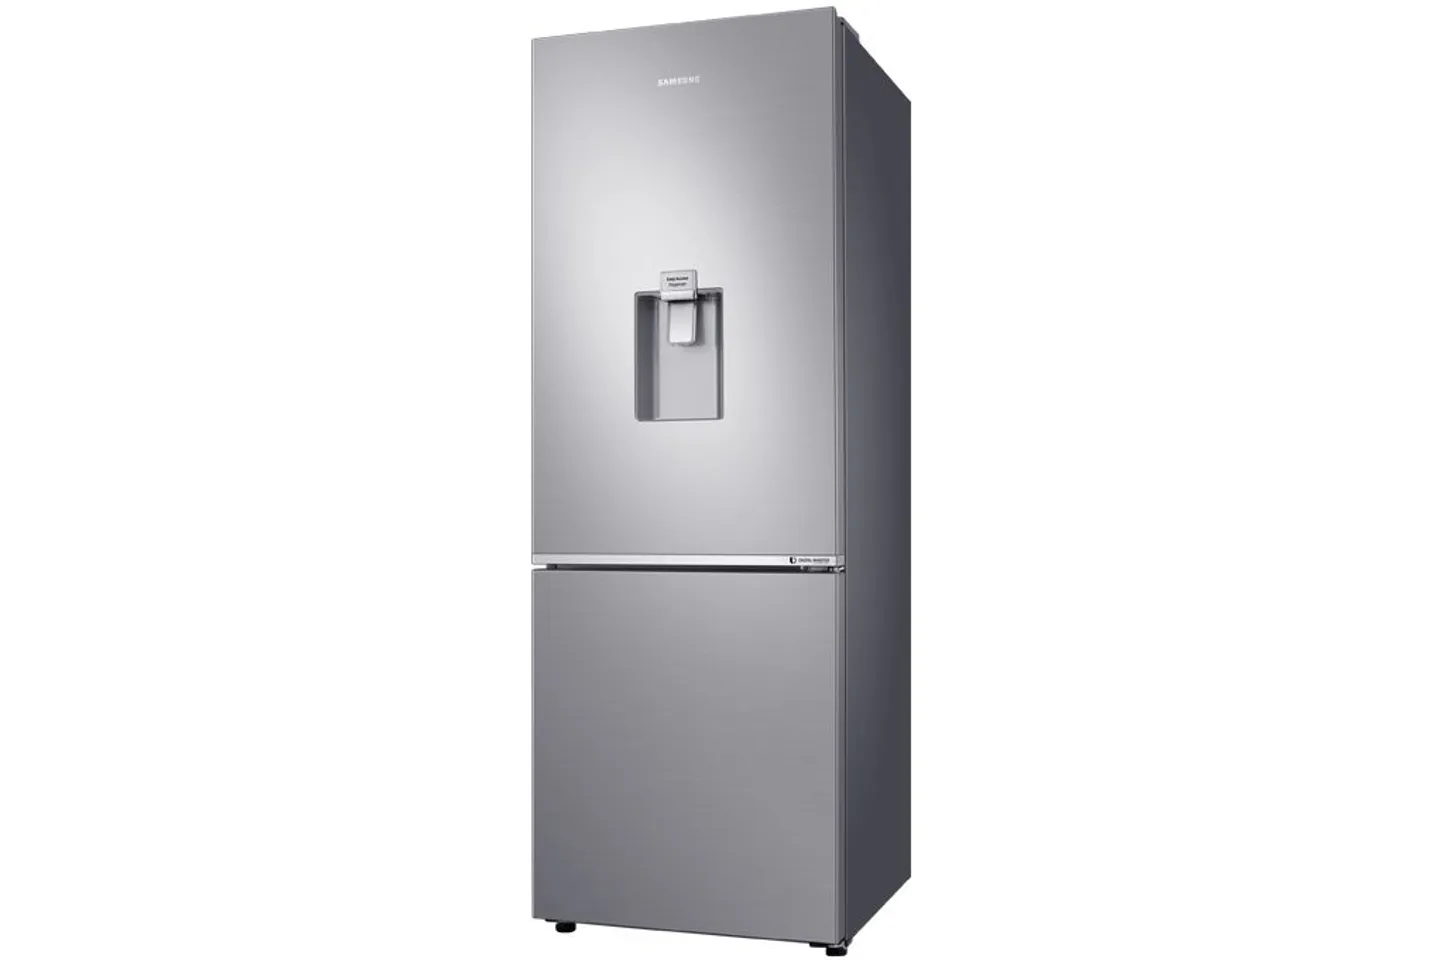 Tủ lạnh Samsung RB30N4170S8/SV ngăn đá dưới 307 lít